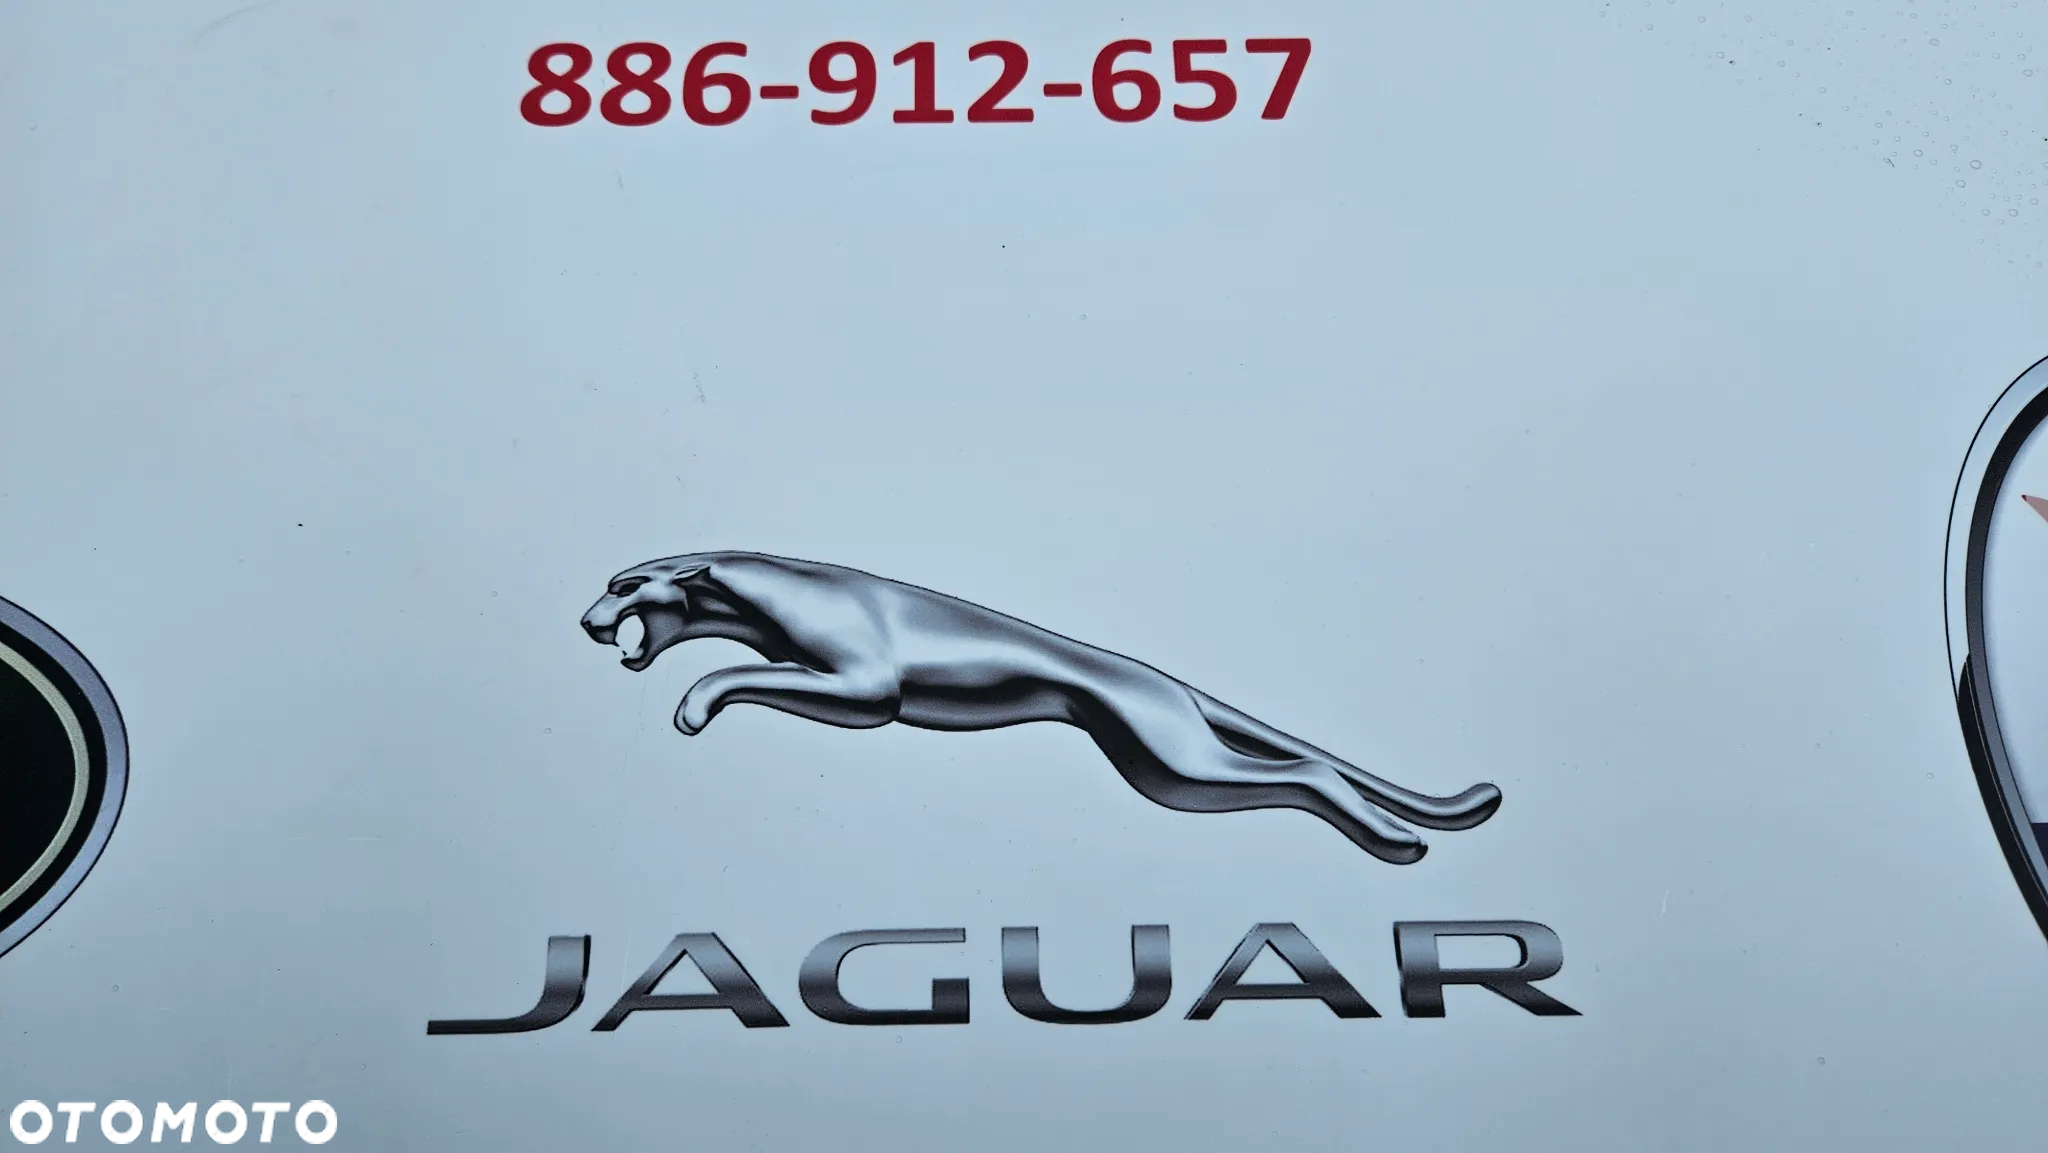 Jaguar XJ 351 LIFT 2015-2019  Kompletna lampa lewa Lampa tył lewy USA LED - 20